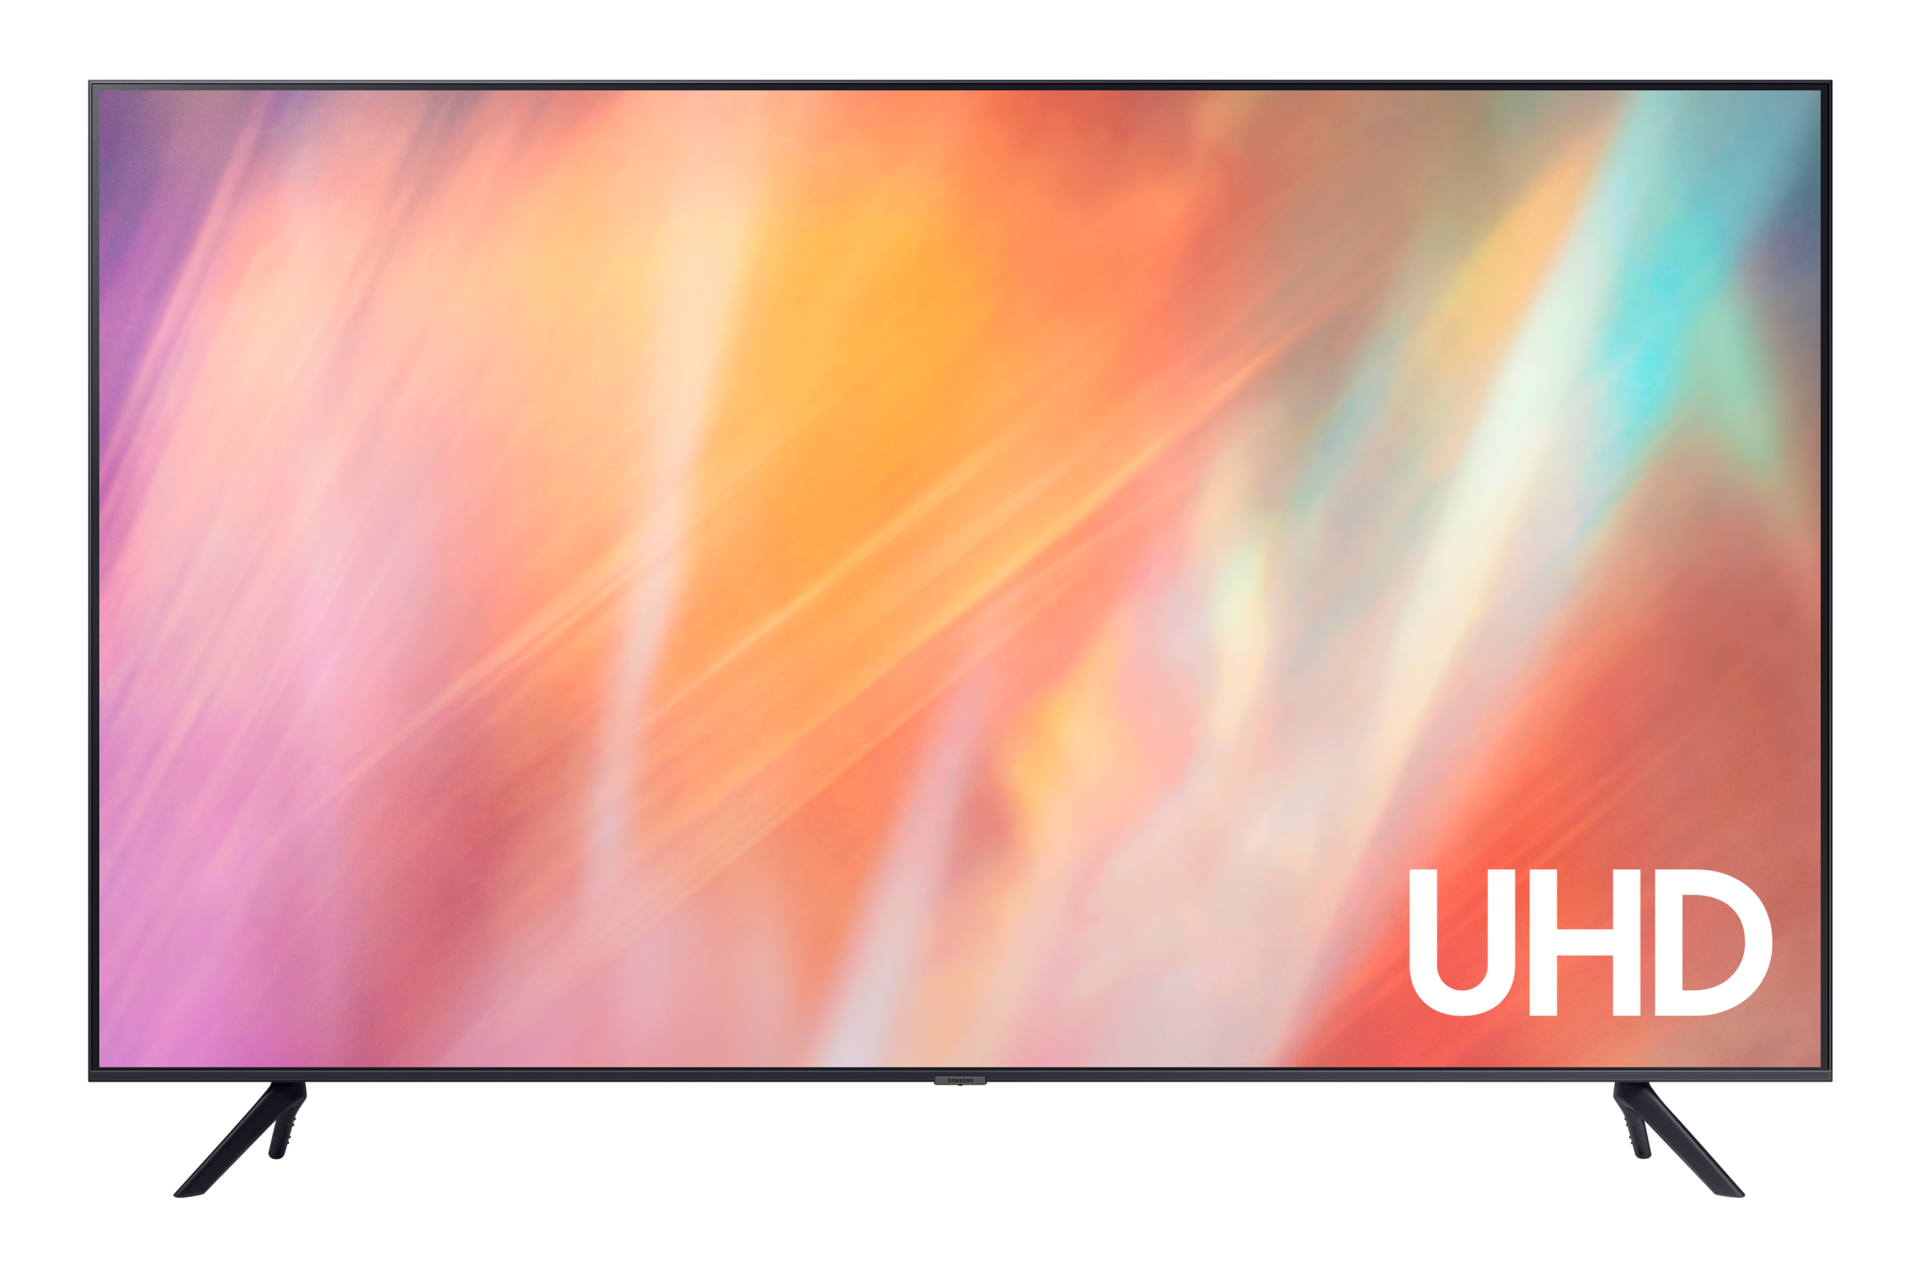 Samsung　UHD　Features　Gulf　Samsung　Smart　4K　58　Inch　TV